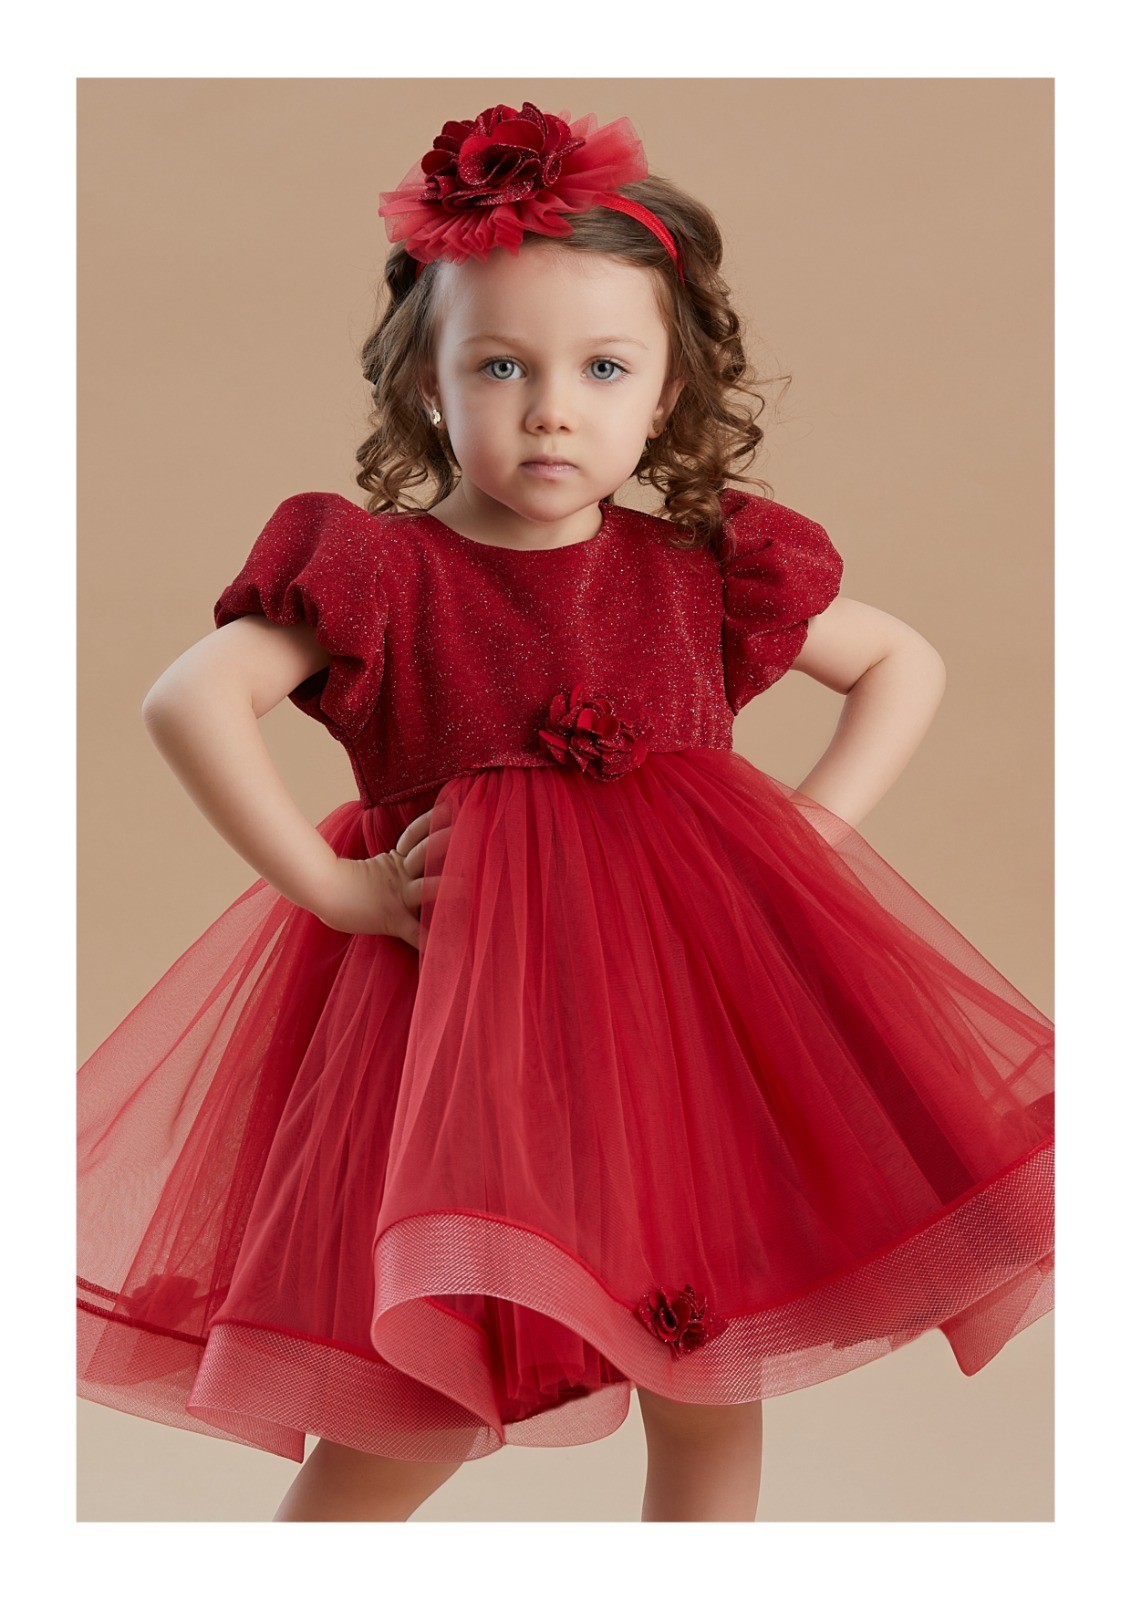 Renkli Rüya Koleksiyonu Çocuk Elbiseleri - Kırmızı